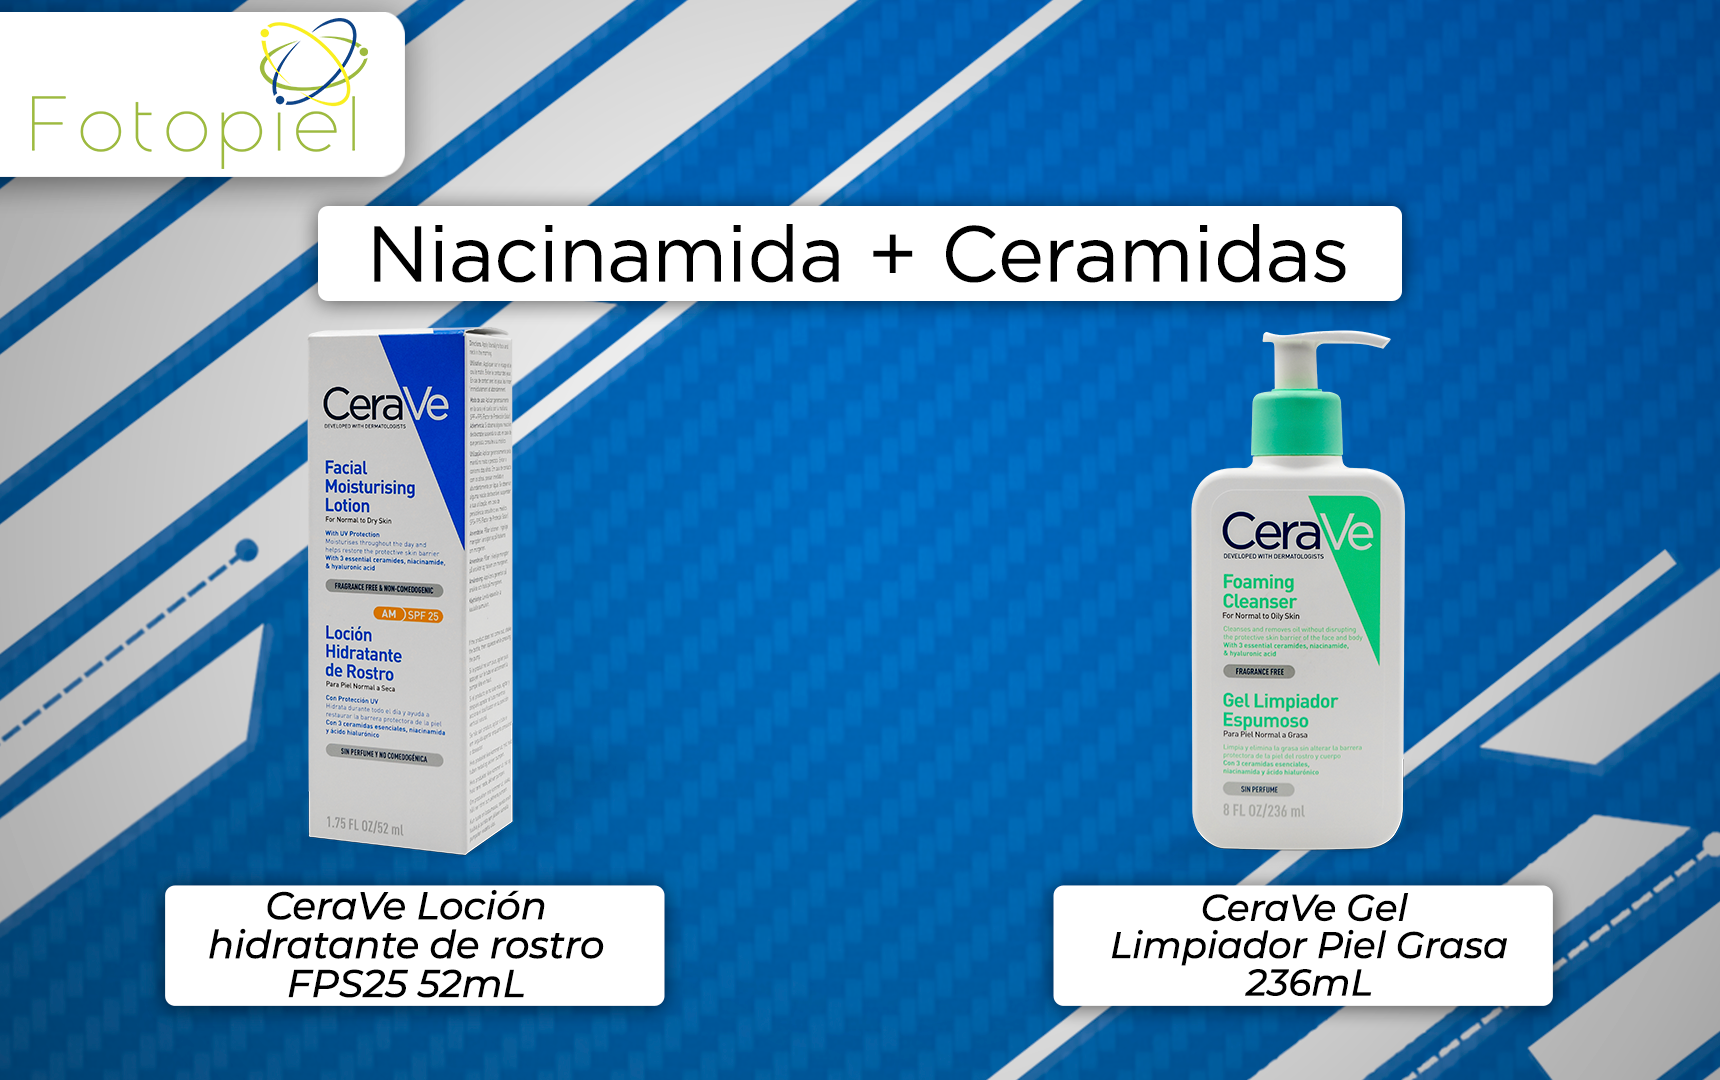 productos que contien niciacinamida & ceramidas en su formulación y están disponibles en fotopiel